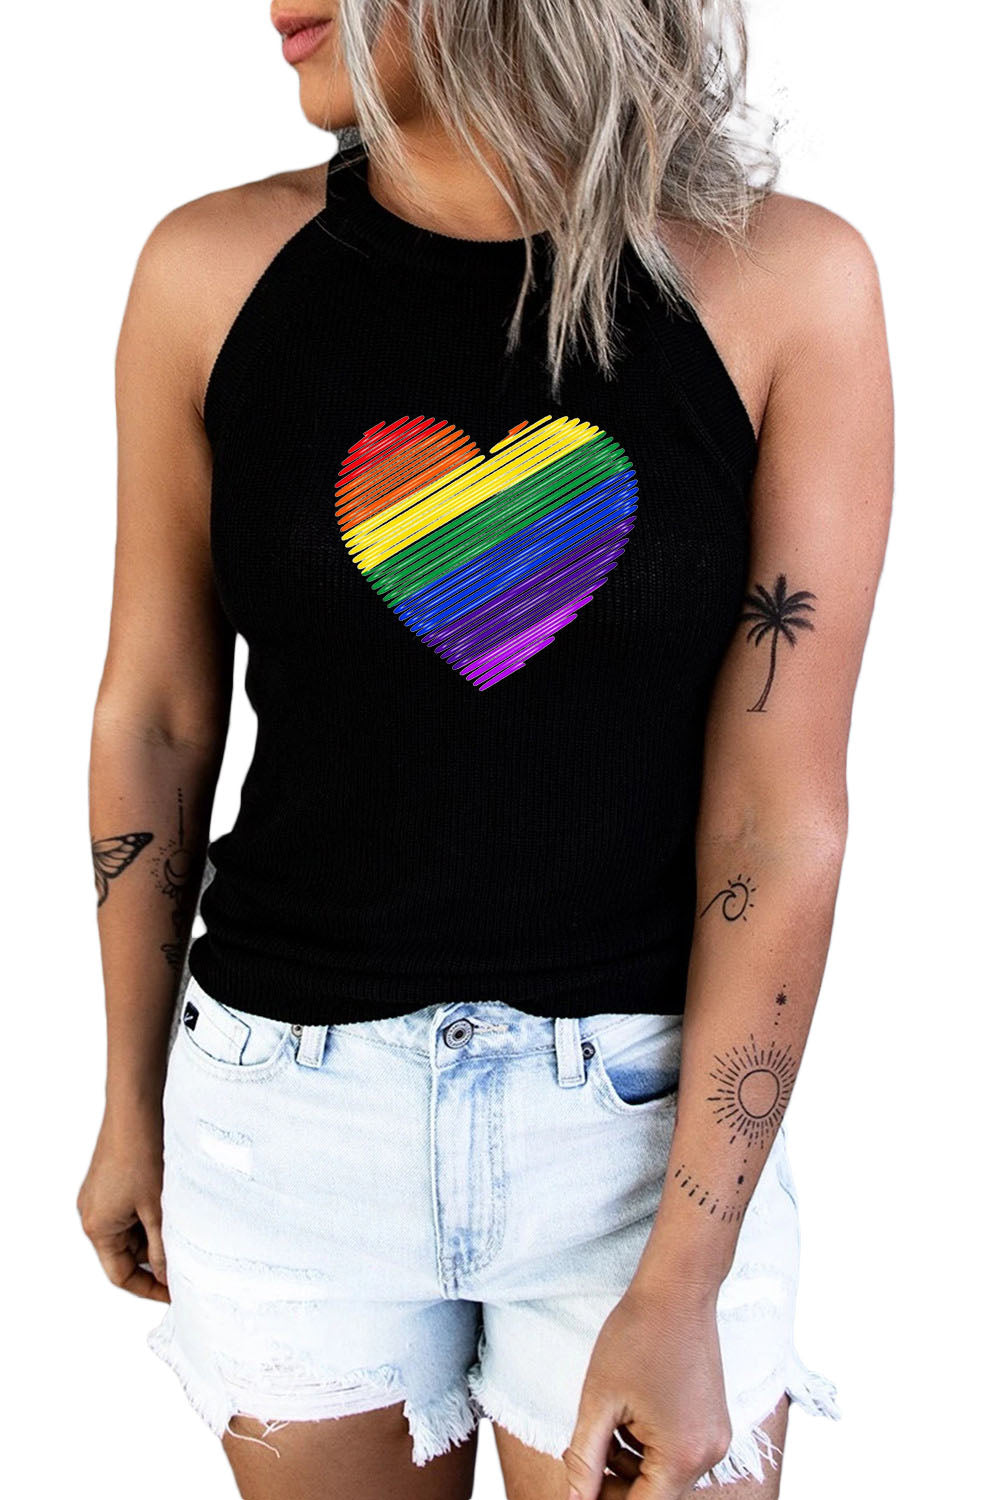 LC2566535-2-S, LC2566535-2-M, LC2566535-2-L, LC2566535-2-XL, LC2566535-2-2XL, Black Womens LGBT Rainbow Heart Print Tank Top Summer Casual Sleeveless Shirt